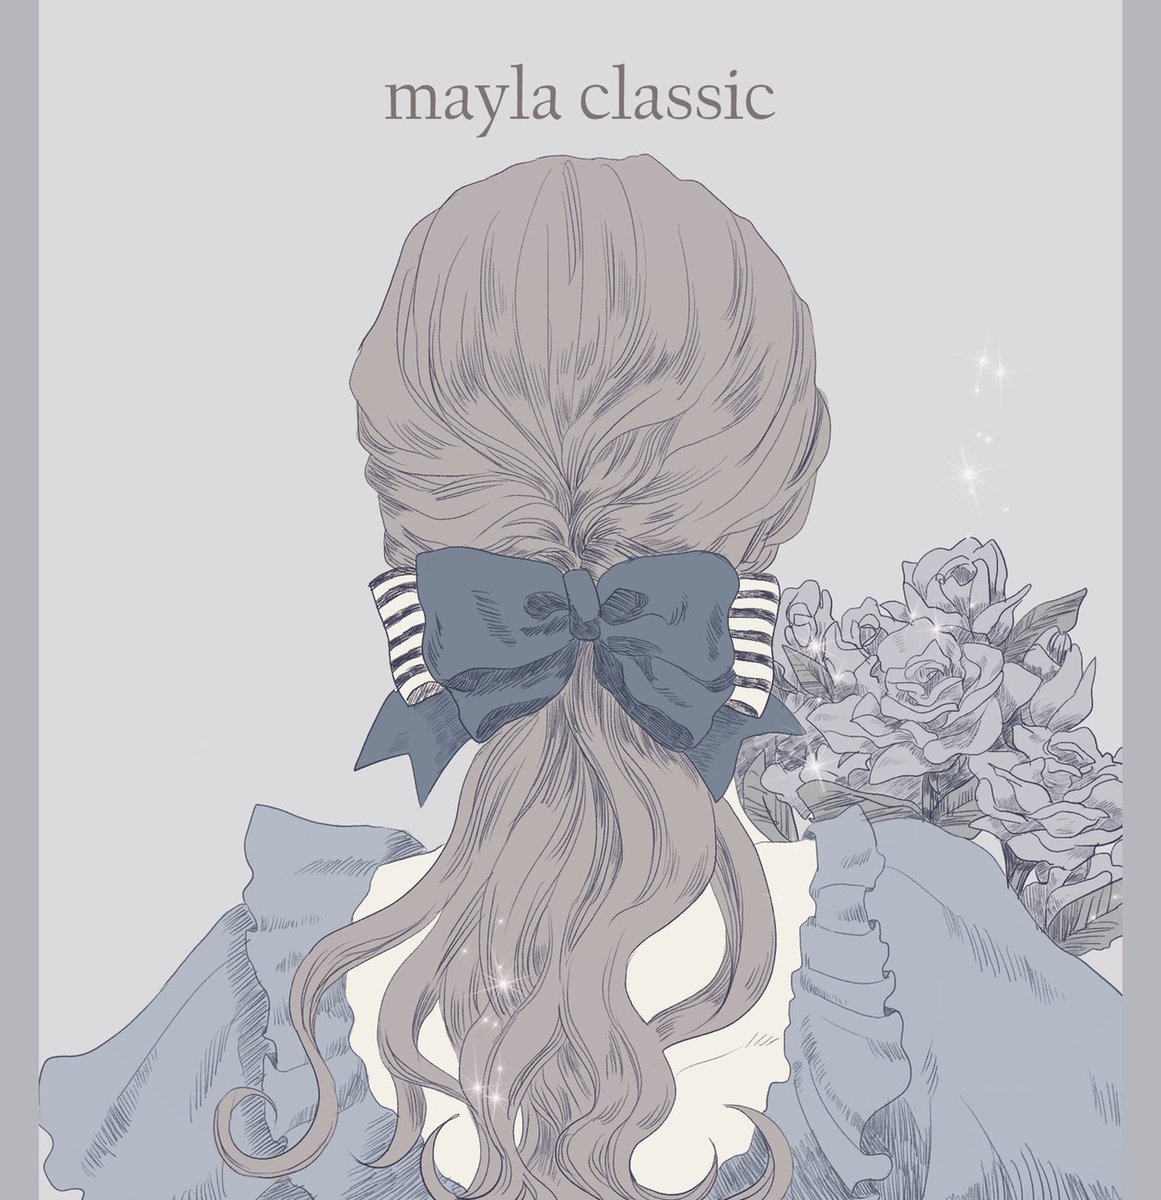 Mayla Classic Twitterissa 皆さん 見て下さい Maylaclassic のクリエイターほのかちゃんが さらりと描いた イラストがすごく可愛かったので フリーアイコン にしてもらいました プリンセスコレクションのお姫様たち Twitterやlineのアイコンなどお好きな